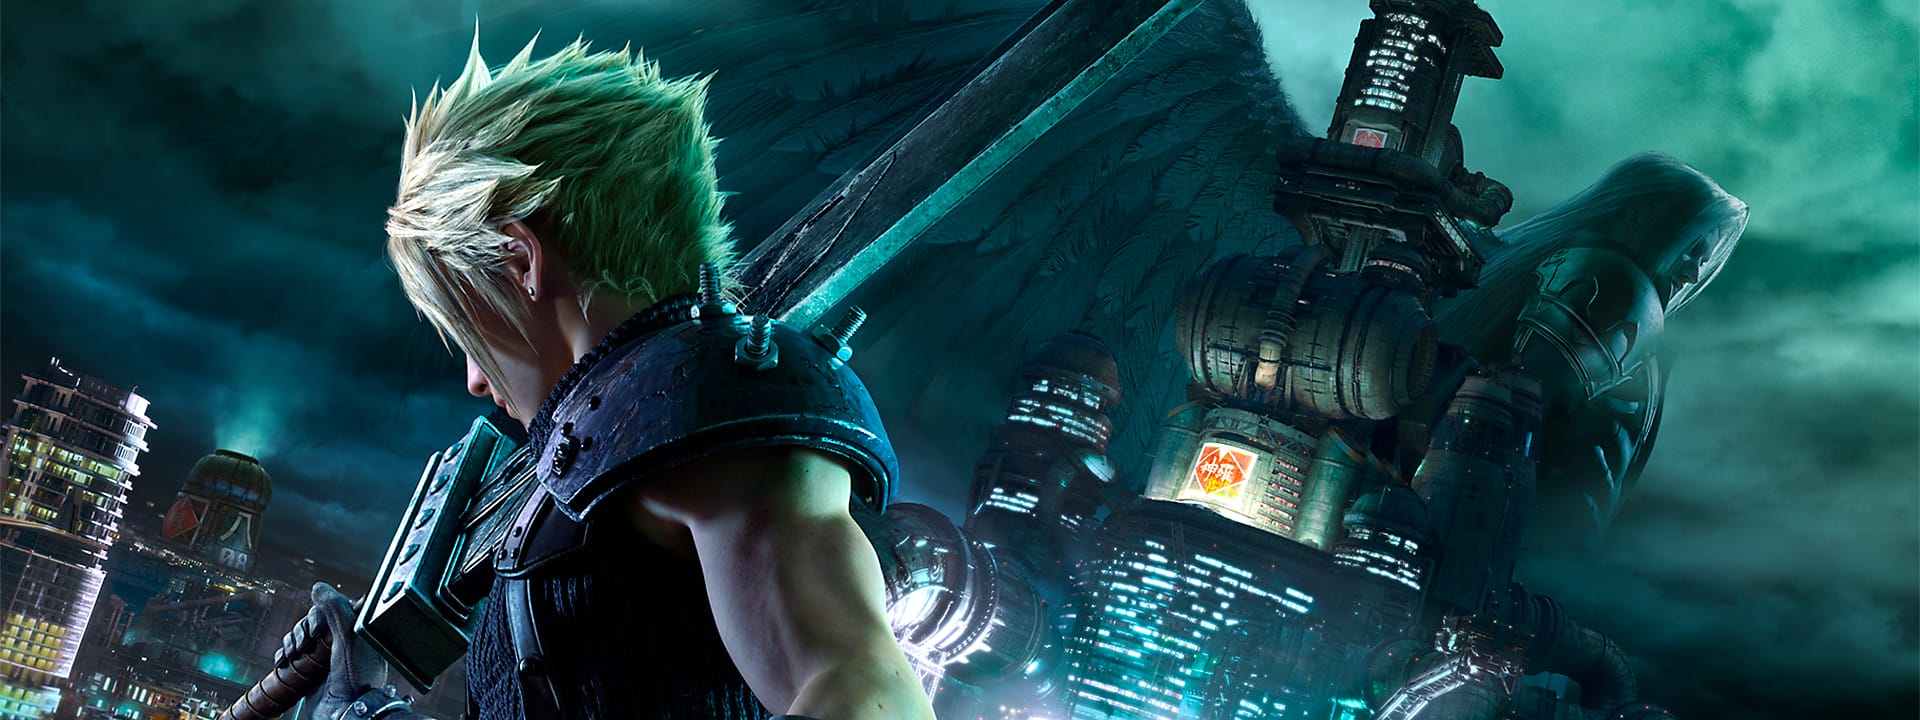 لعبة Final Fantasy VII Remake تصدرت مبيعات متجر PS4 في أبريل